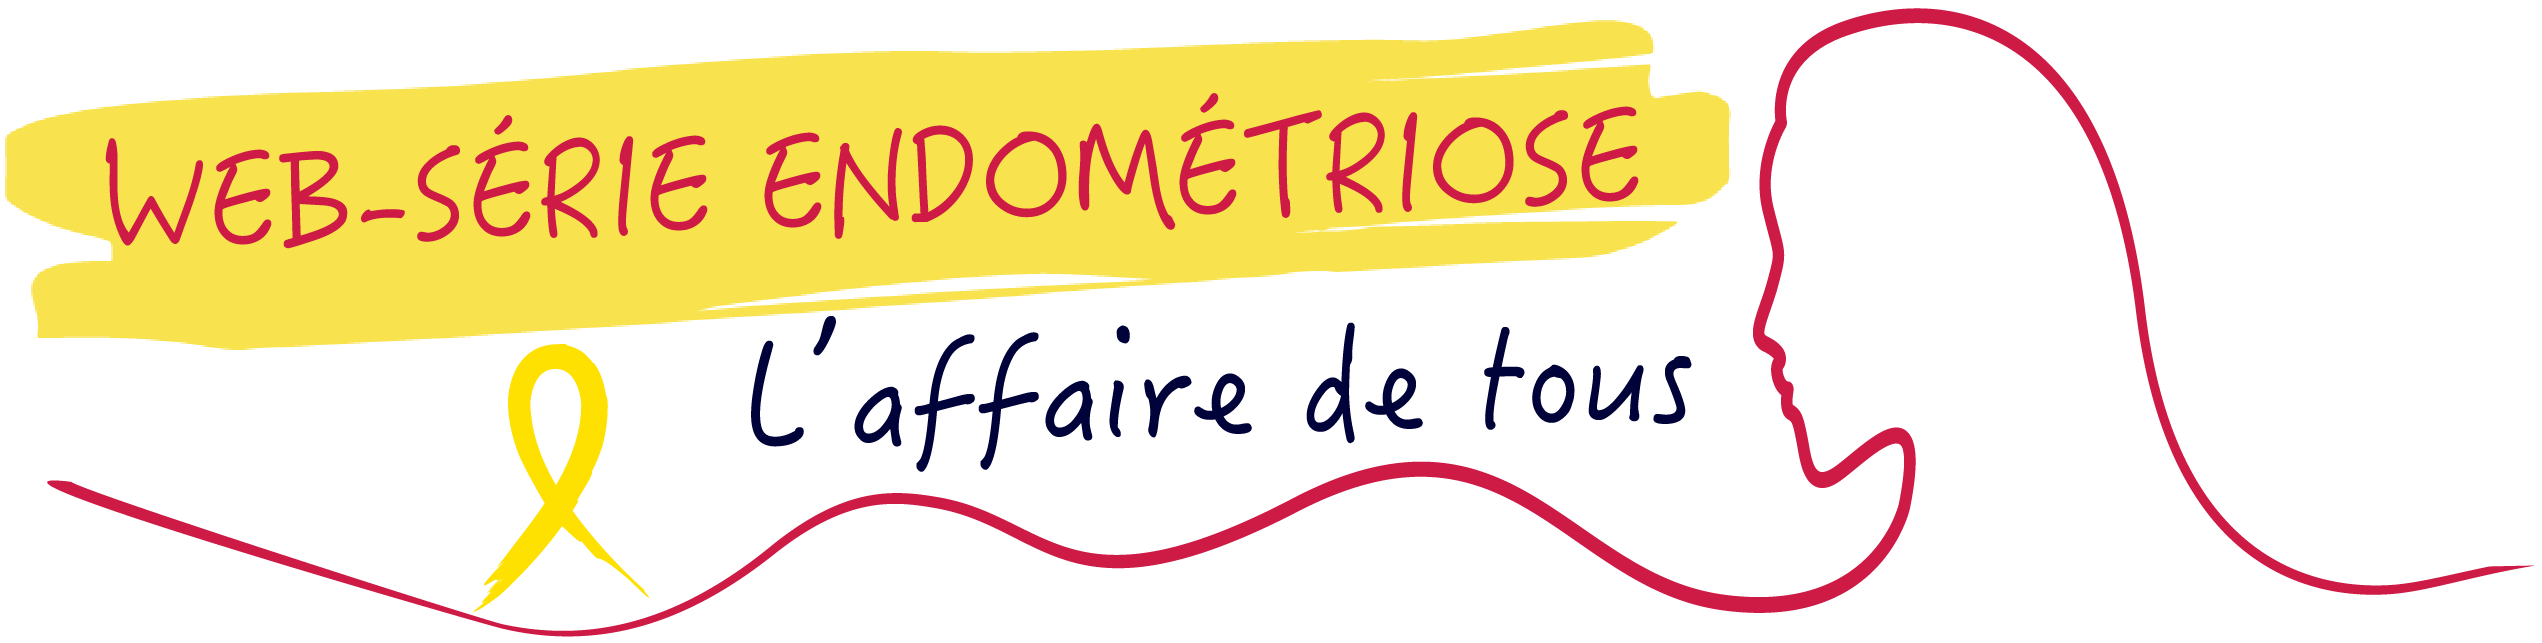 Logo Endométriose : Web série